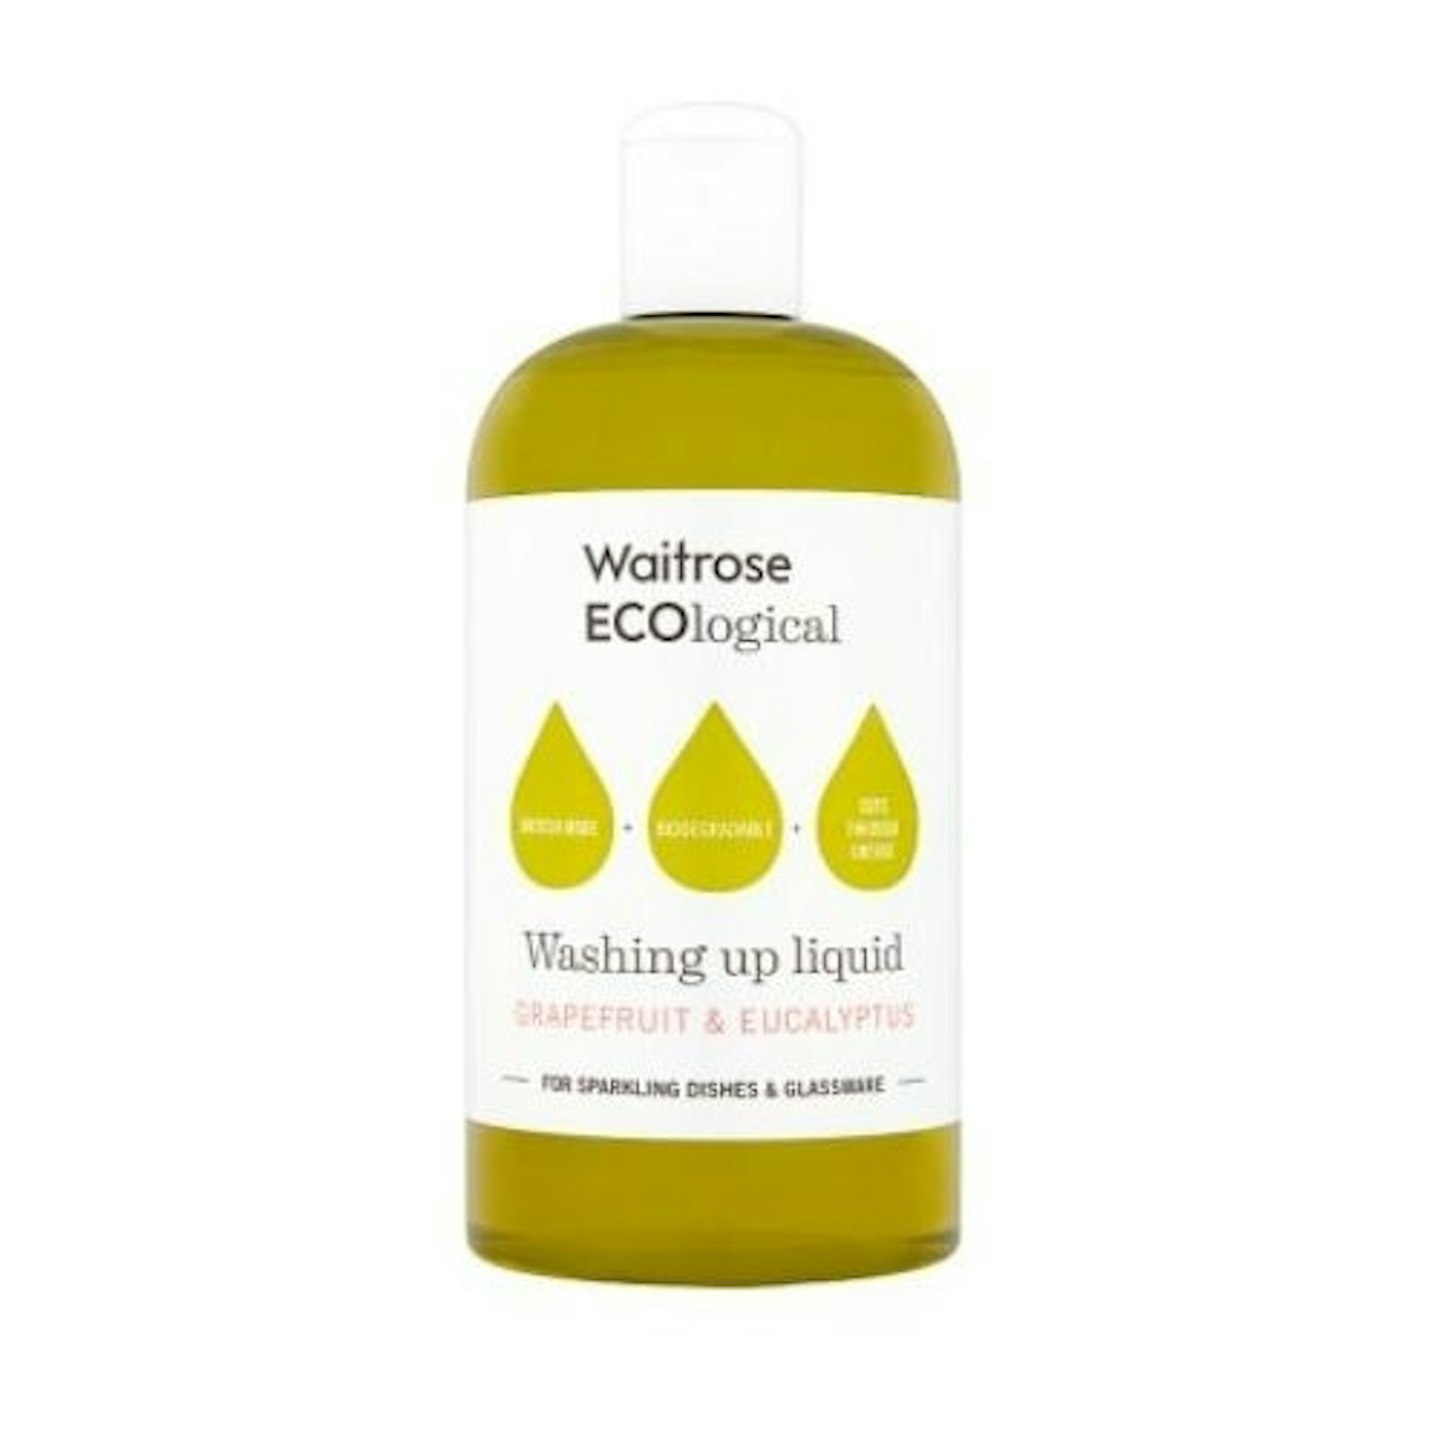 Waitrose ECOlogical Washing Up Liquid